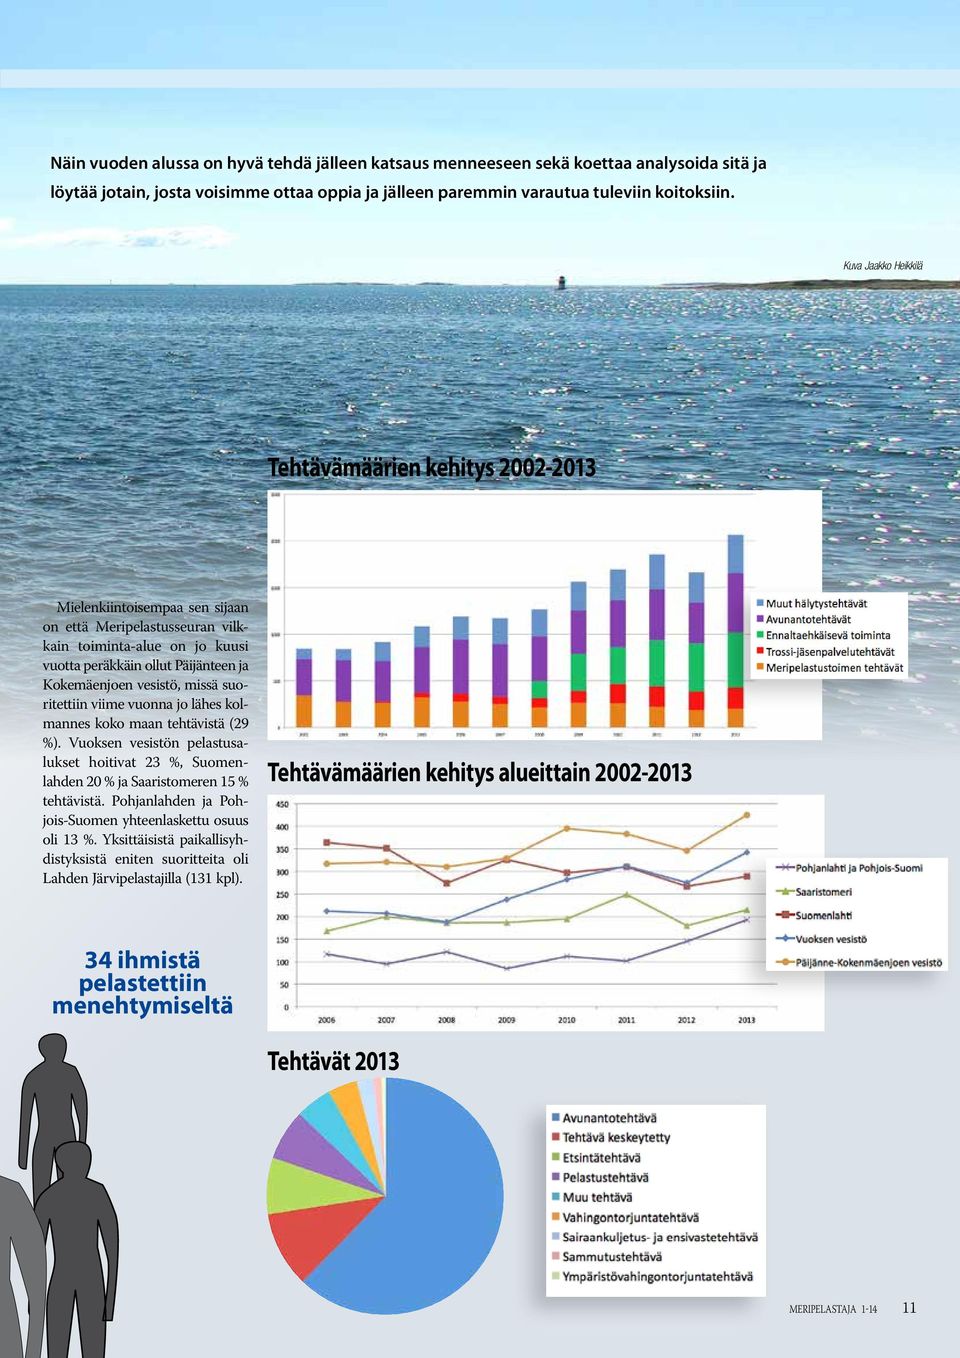 vesistö, missä suoritettiin viime vuonna jo lähes kolmannes koko maan tehtävistä (29 %). Vuoksen vesistön pelastusalukset hoitivat 23 %, Suomenlahden 20 % ja Saaristomeren 15 % tehtävistä.